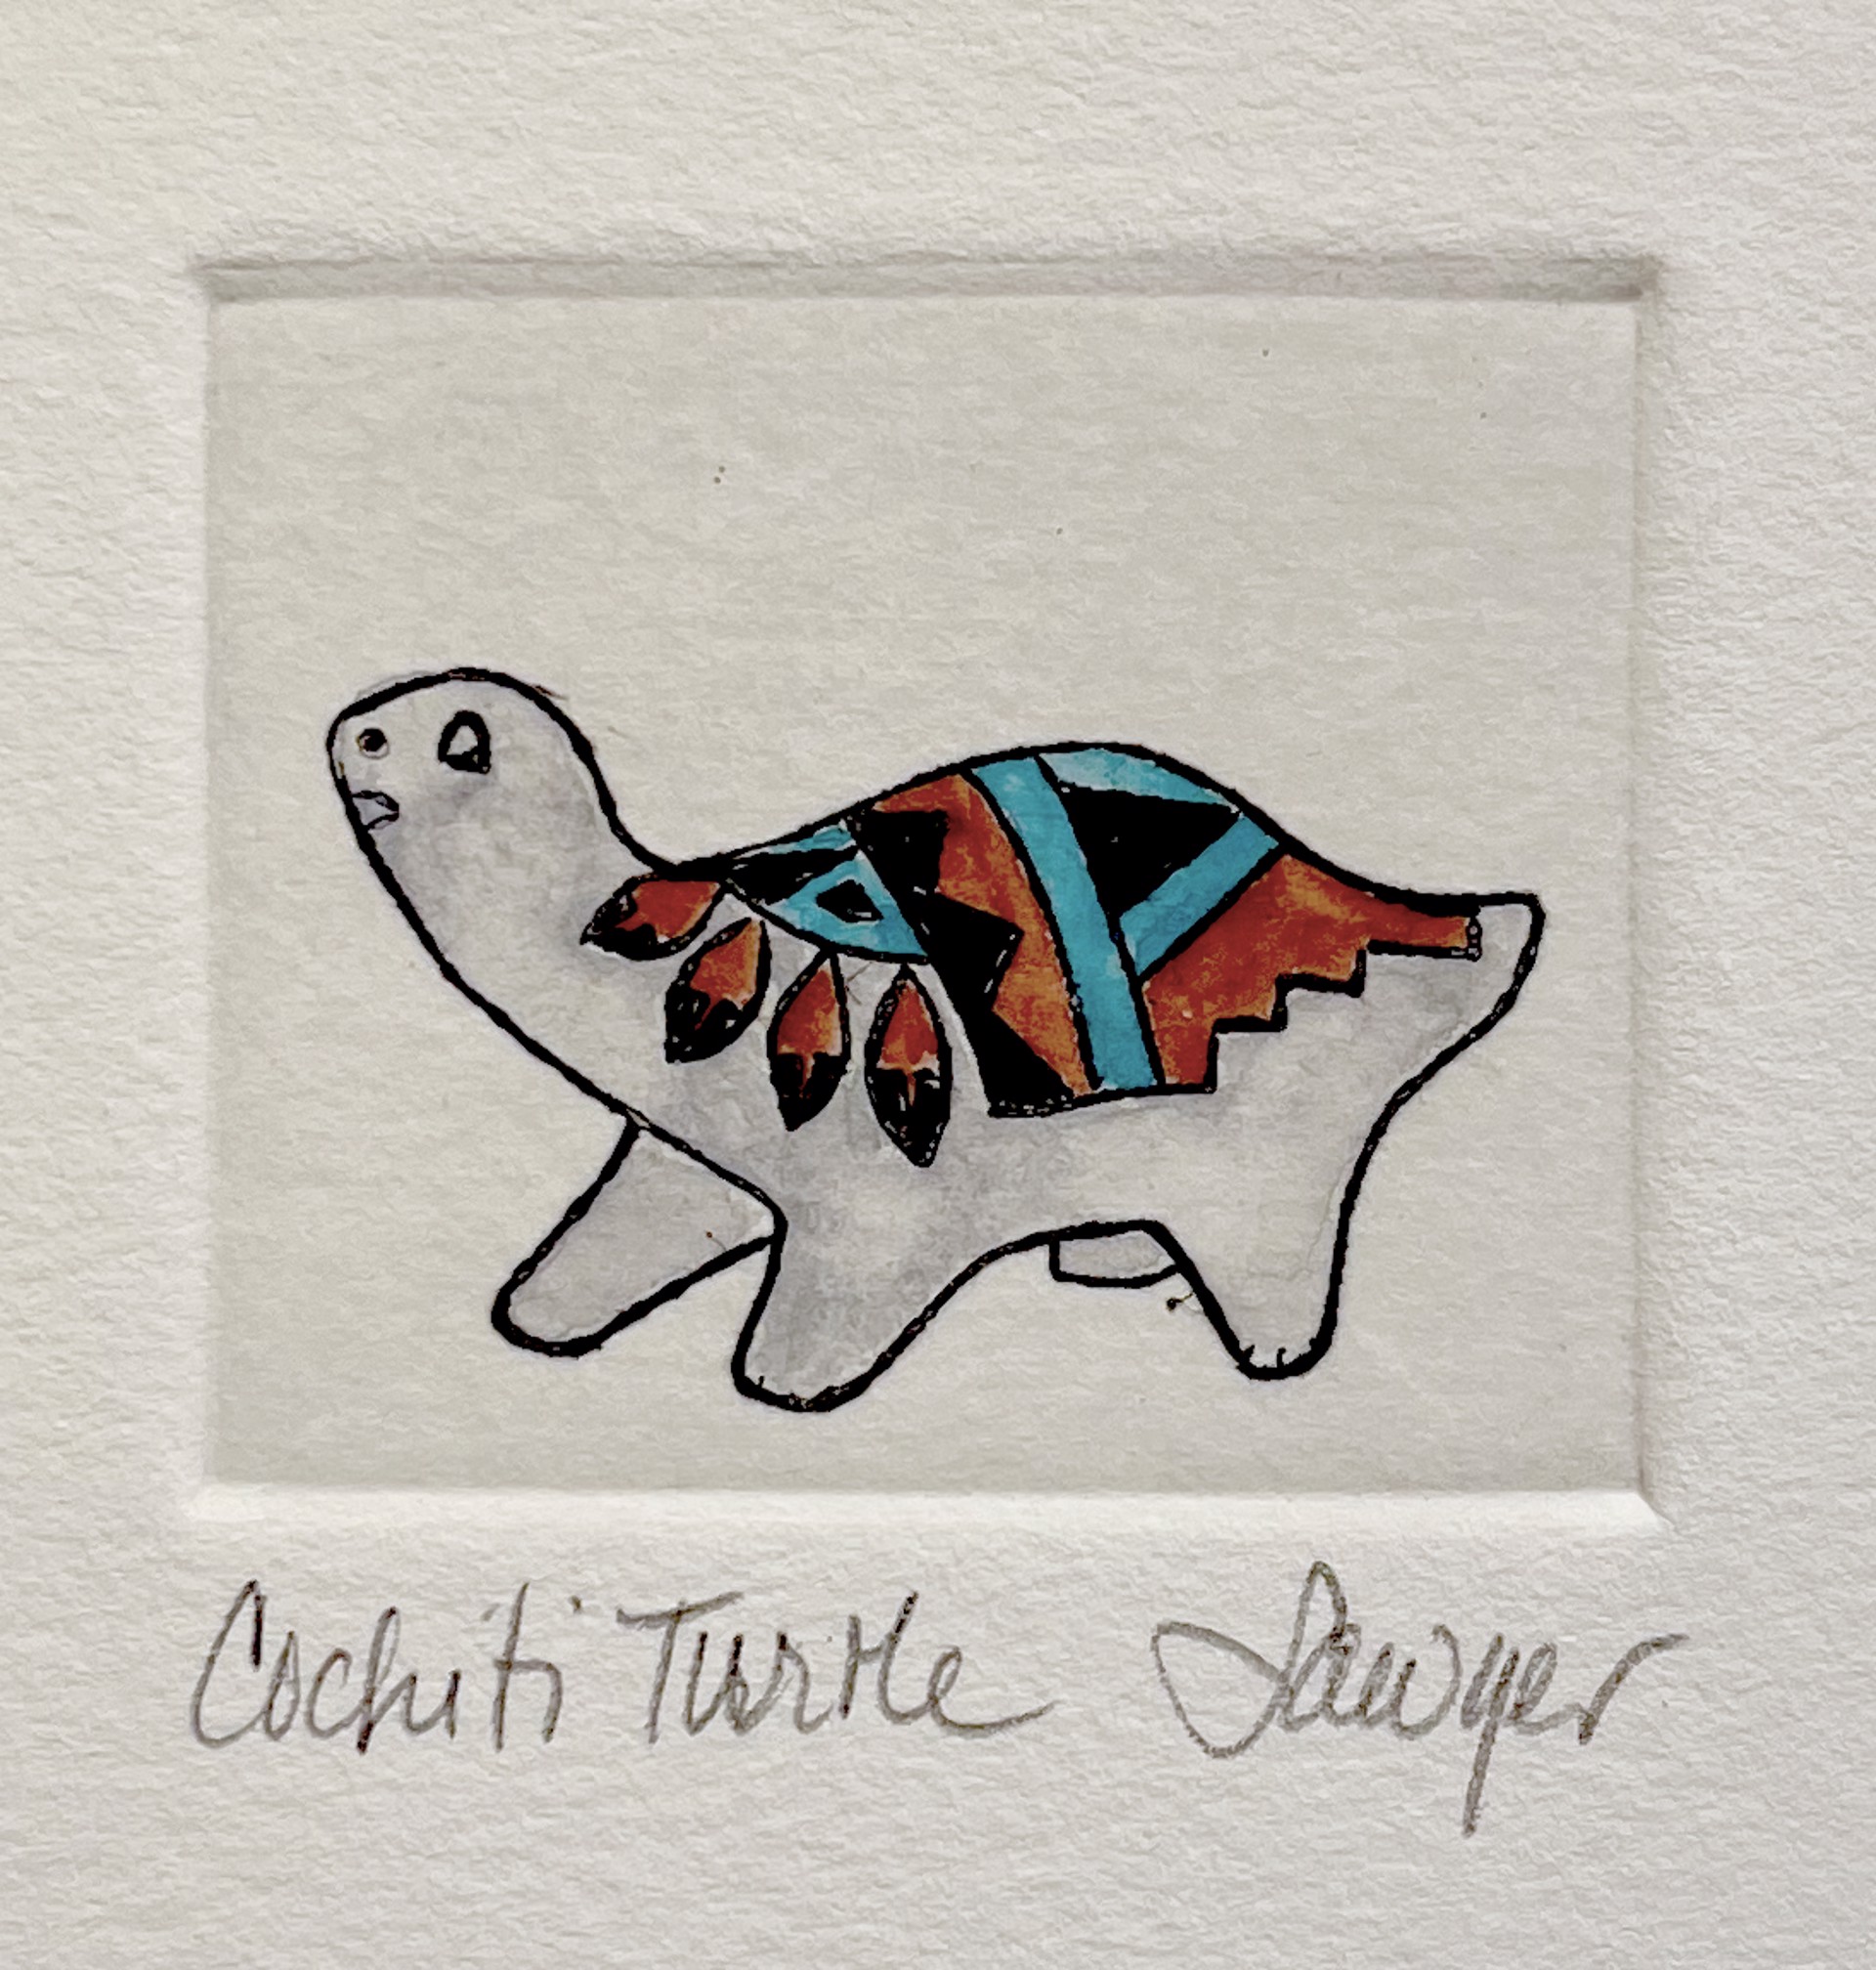 Cochiti Turtle (framed) by Anne Sawyer